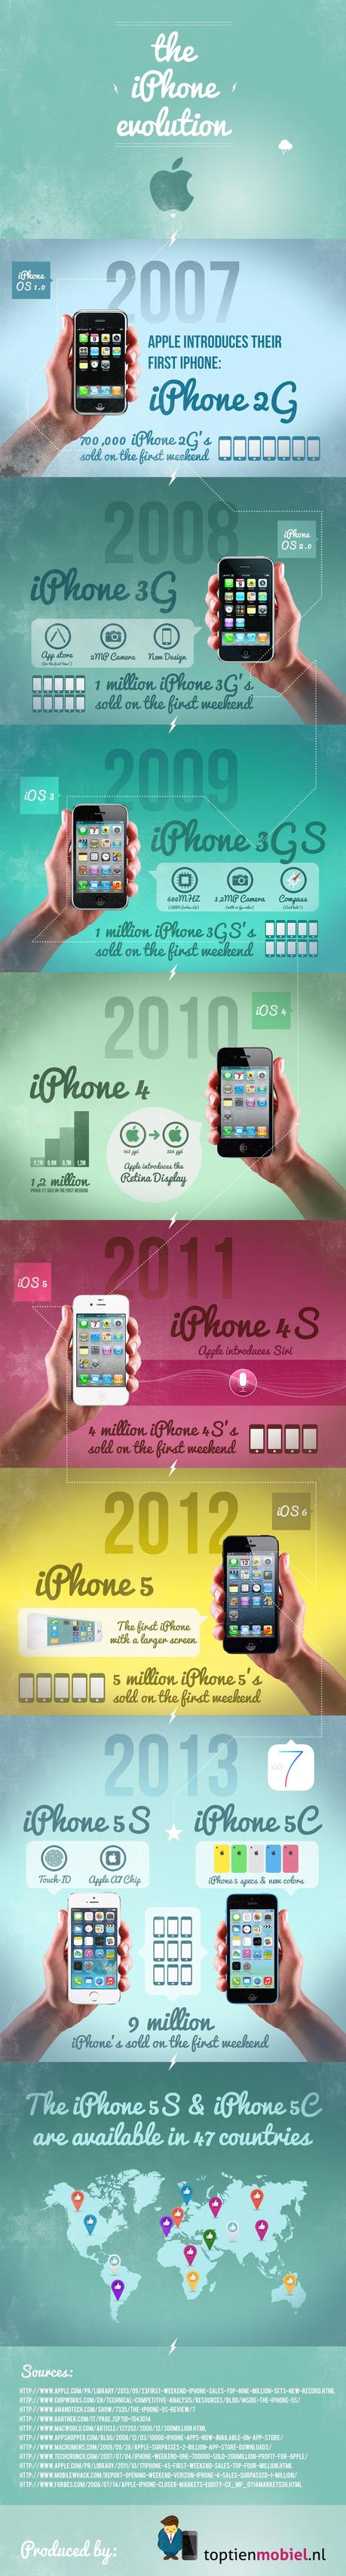 Infographie sur l'évolution de l'iPhone...